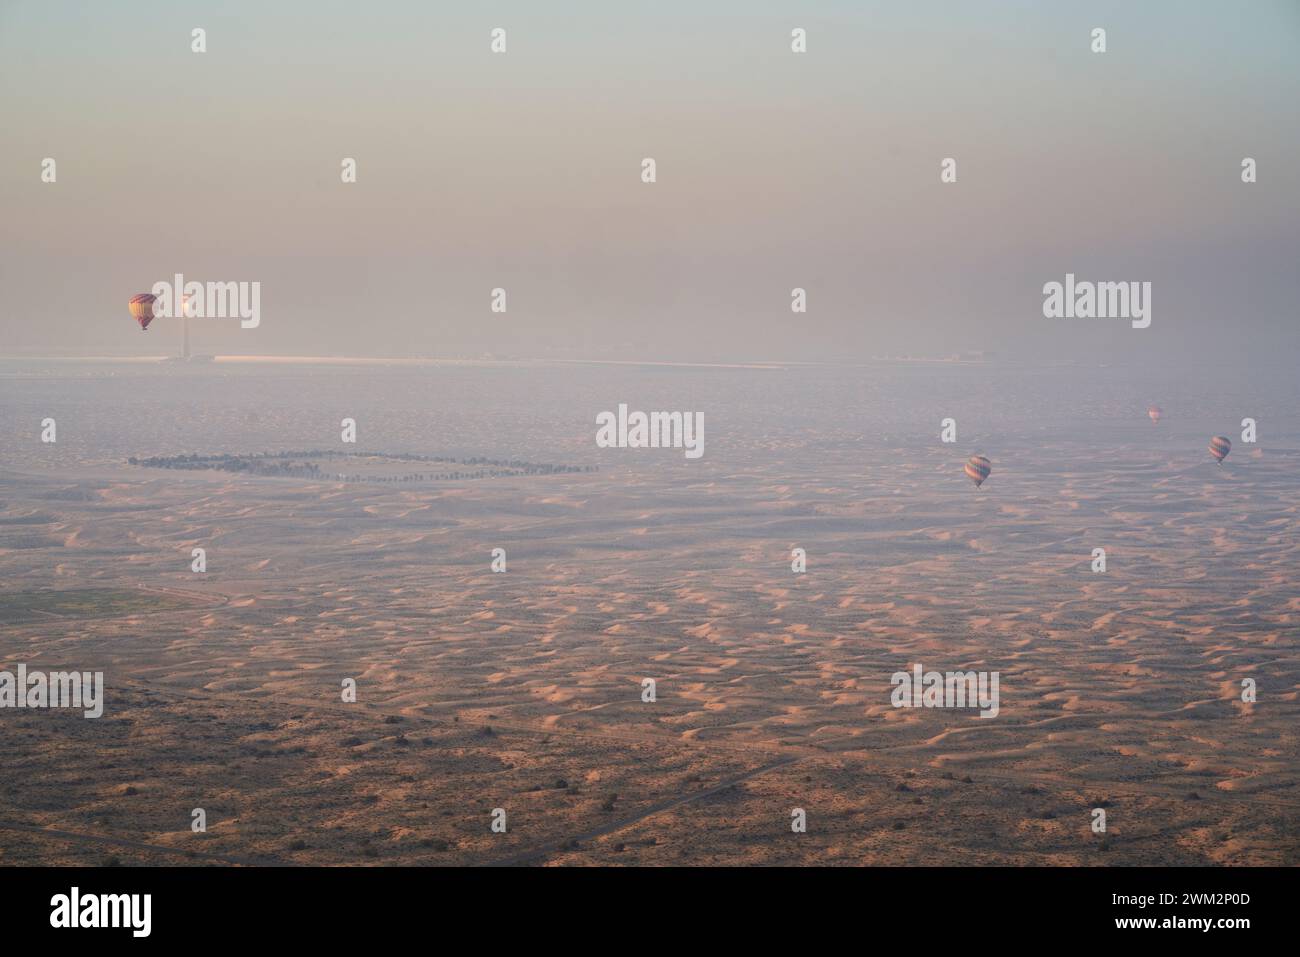 Montgolfières au-dessus du parc solaire Mohammed bin Rashid Al Maktoum, Dubaï, Émirats arabes Unis. Banque D'Images